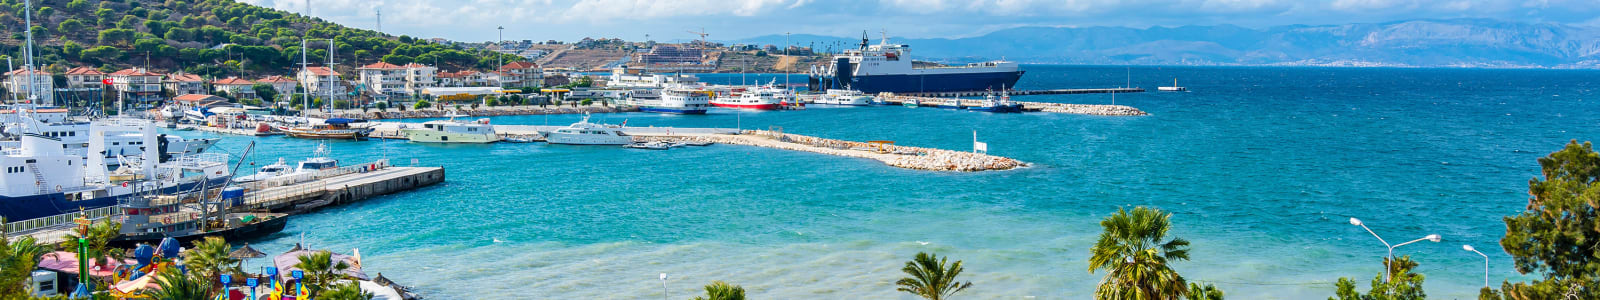 Izmir harbour